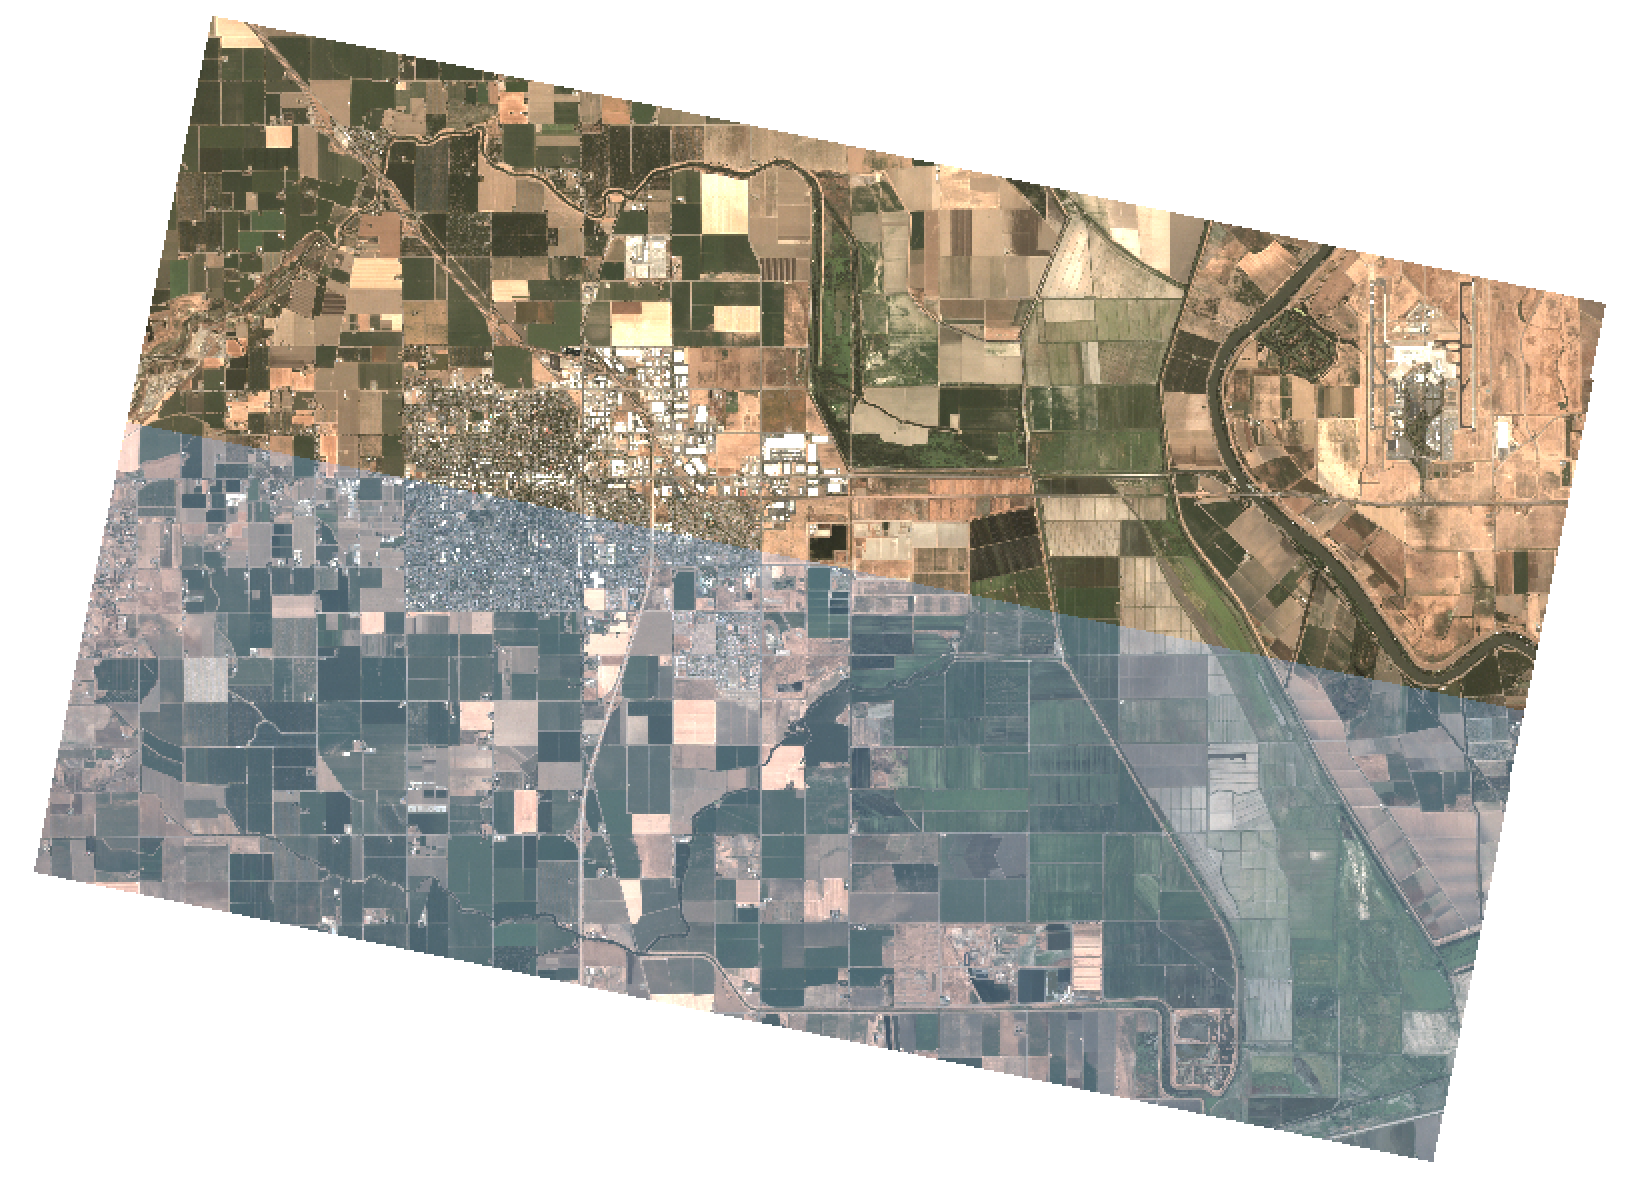 Área rural monitorada pelo satélite Planet, com dados de alta resolução.